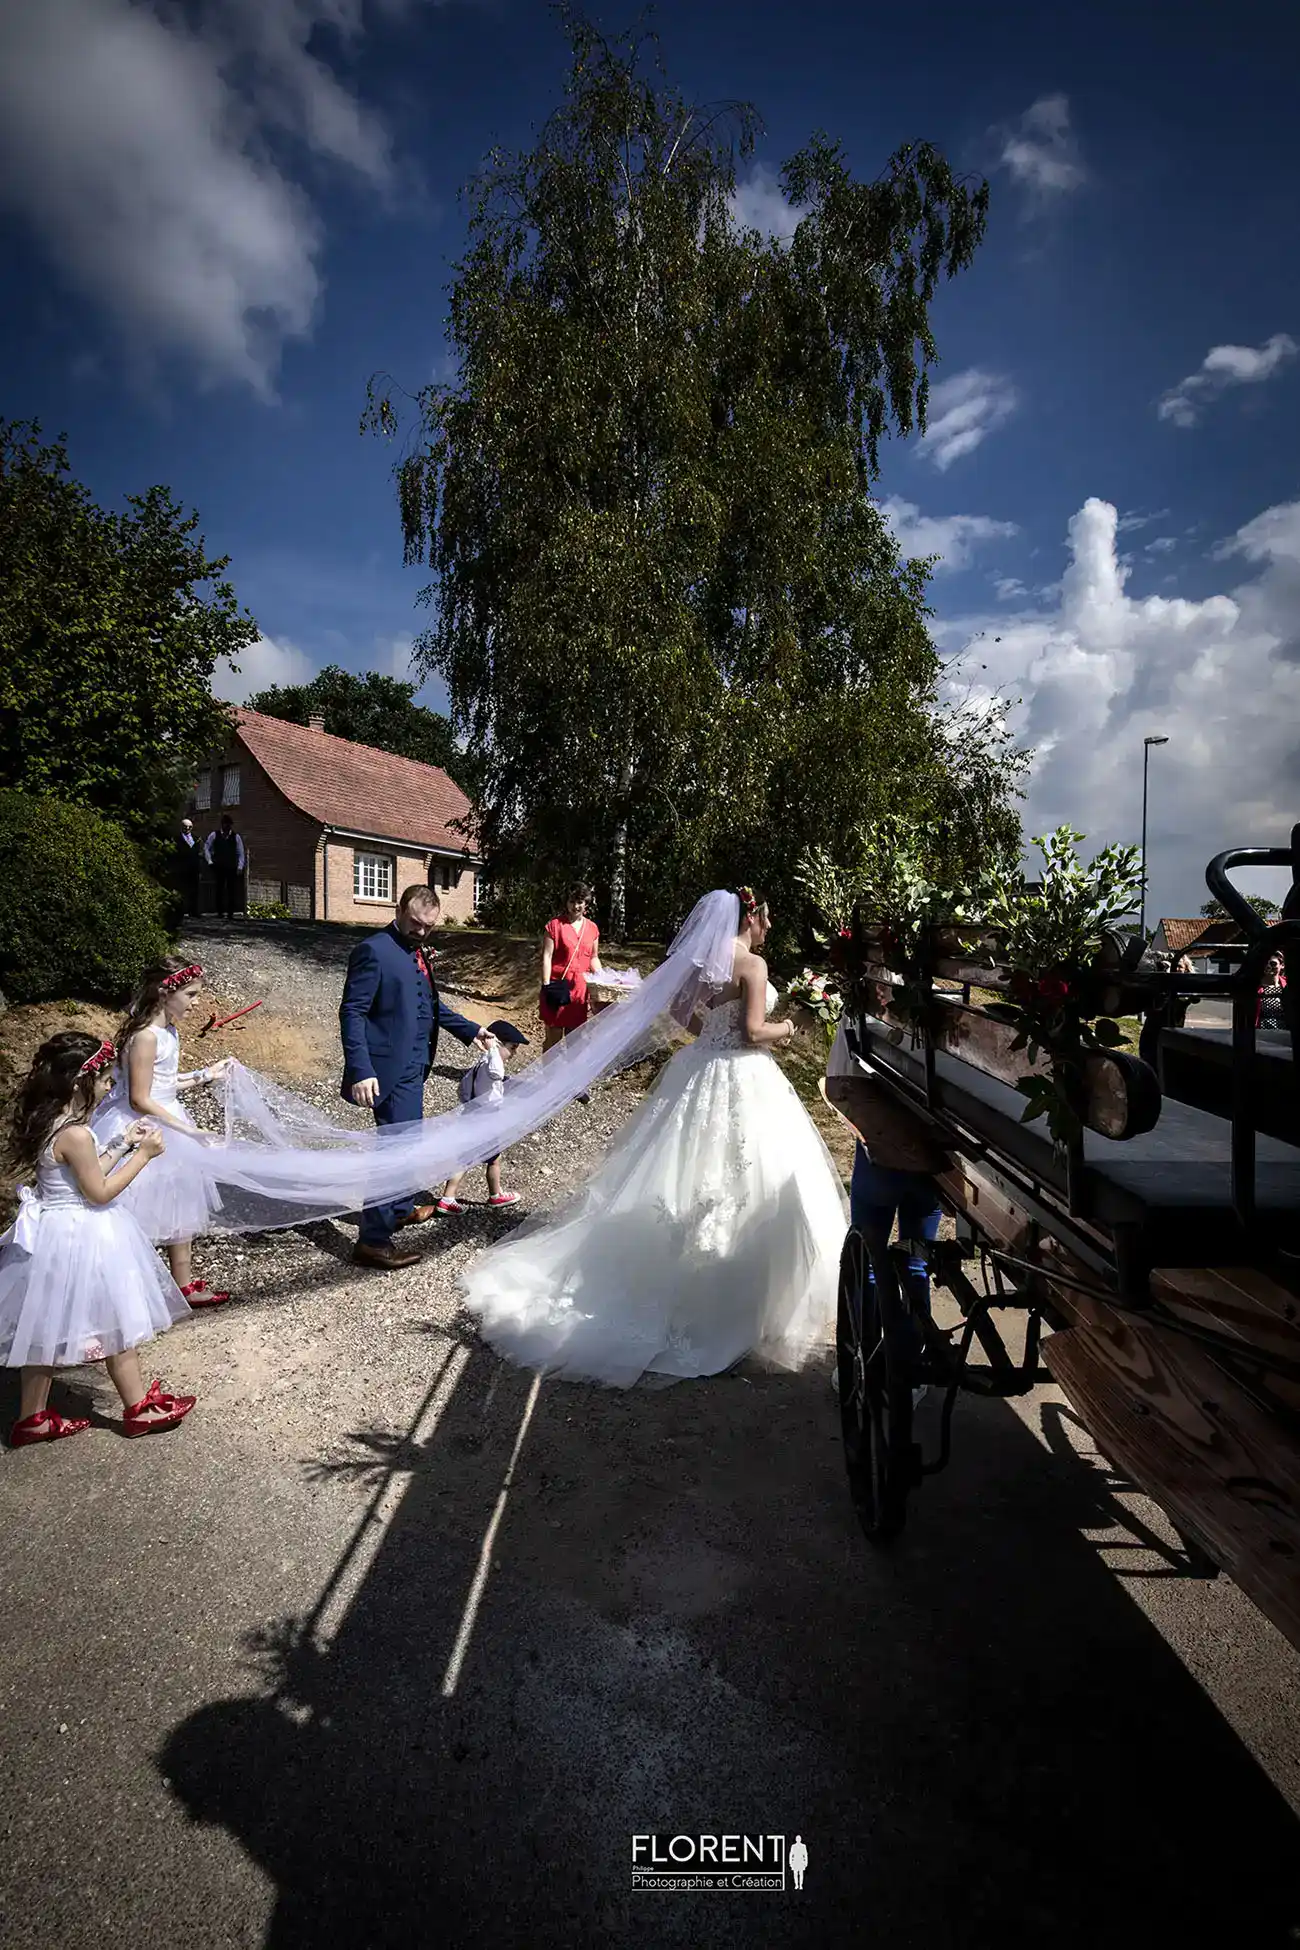 photographe mariage lille etaples les mariés joyeux montent dans le carrosse direction la mairie florent mariageboulogne sur mer le touquet paris saint omer